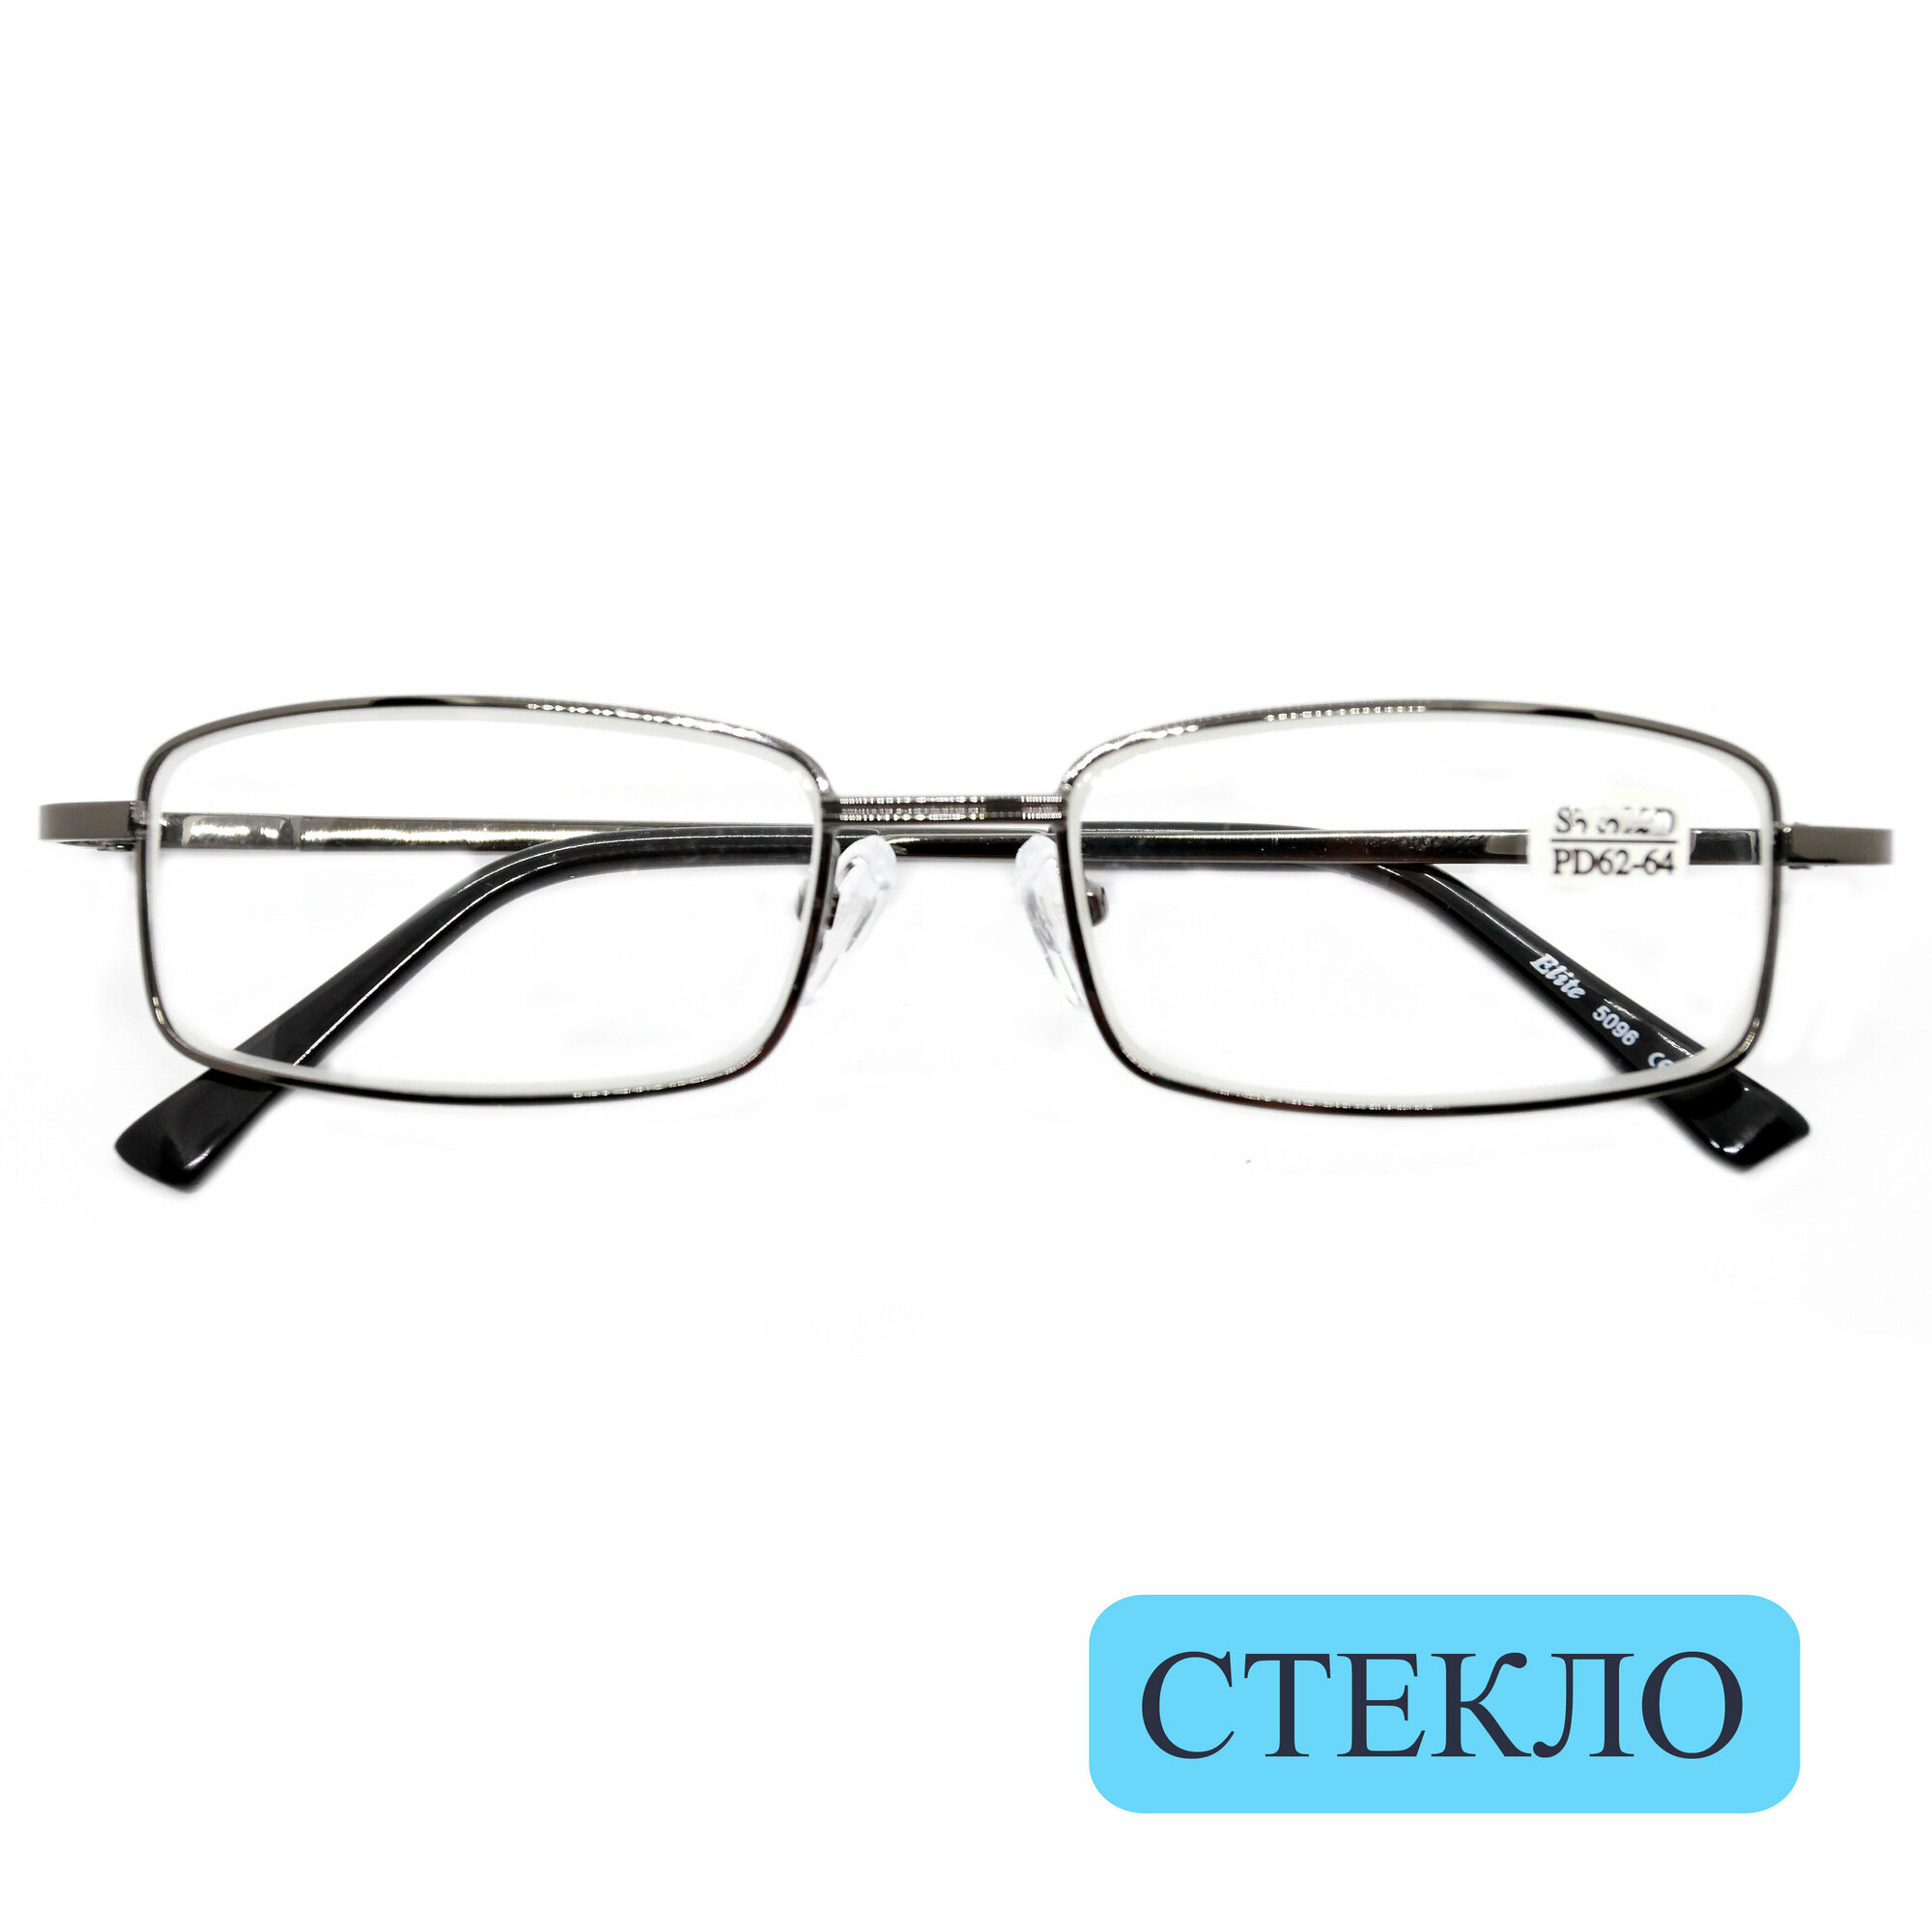 Стеклянные очки для чтения (+3.50) ELITE 5096, линза стекло, цвет серый, РЦ 62-64, с салфеткой